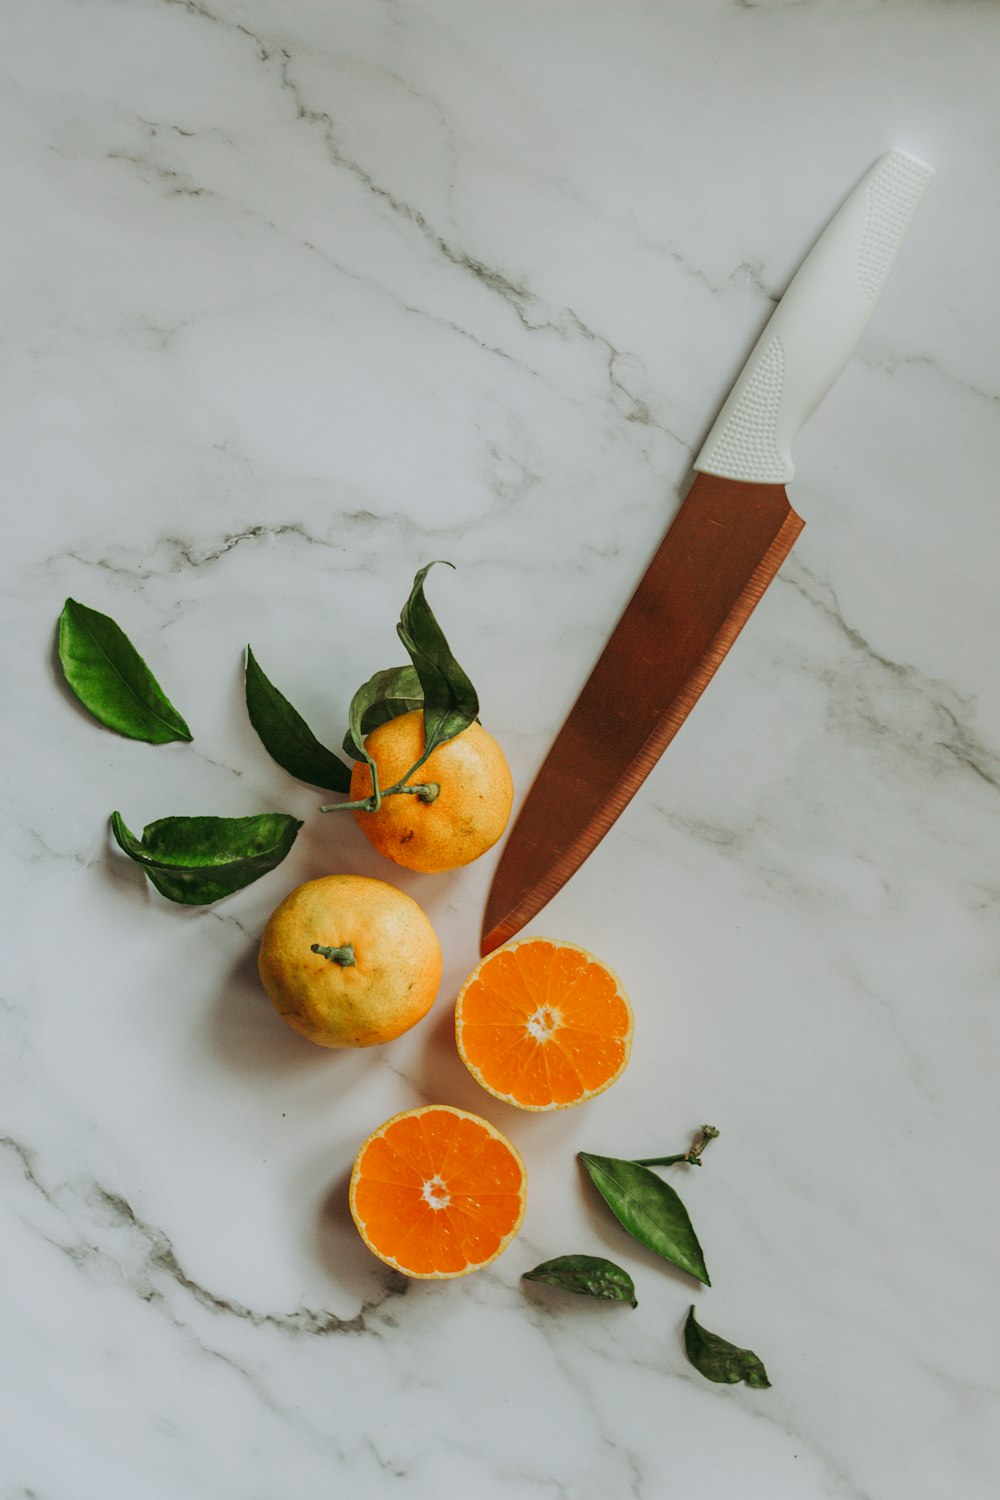 갈색 손잡이 칼 옆에 얇게 썬 오렌지 과일